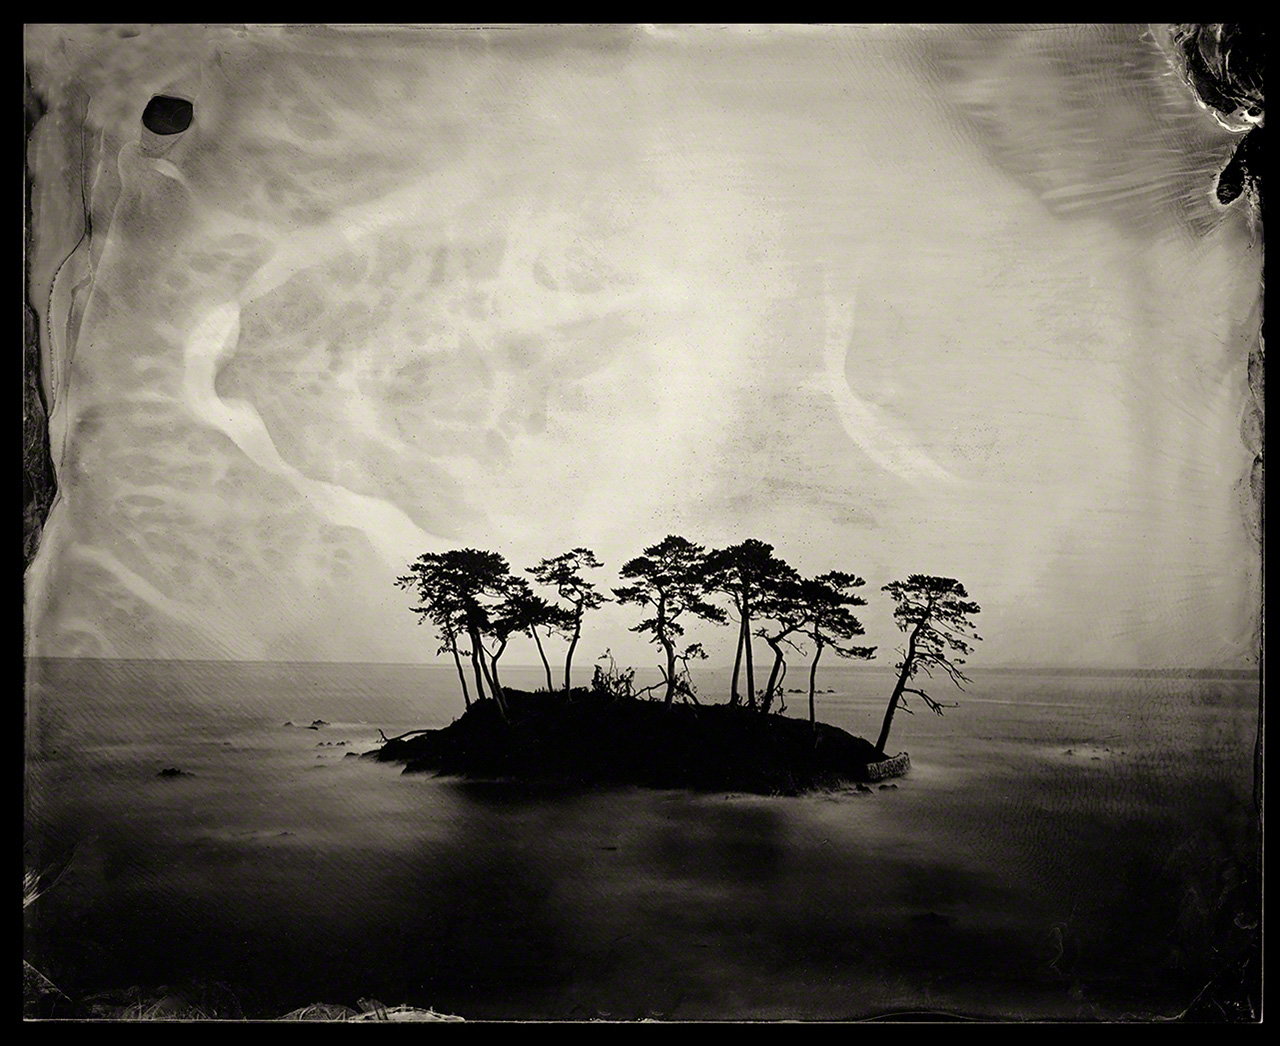 出雲地方の松林の島。出雲では、松の木は長寿と再生を象徴すると言われる